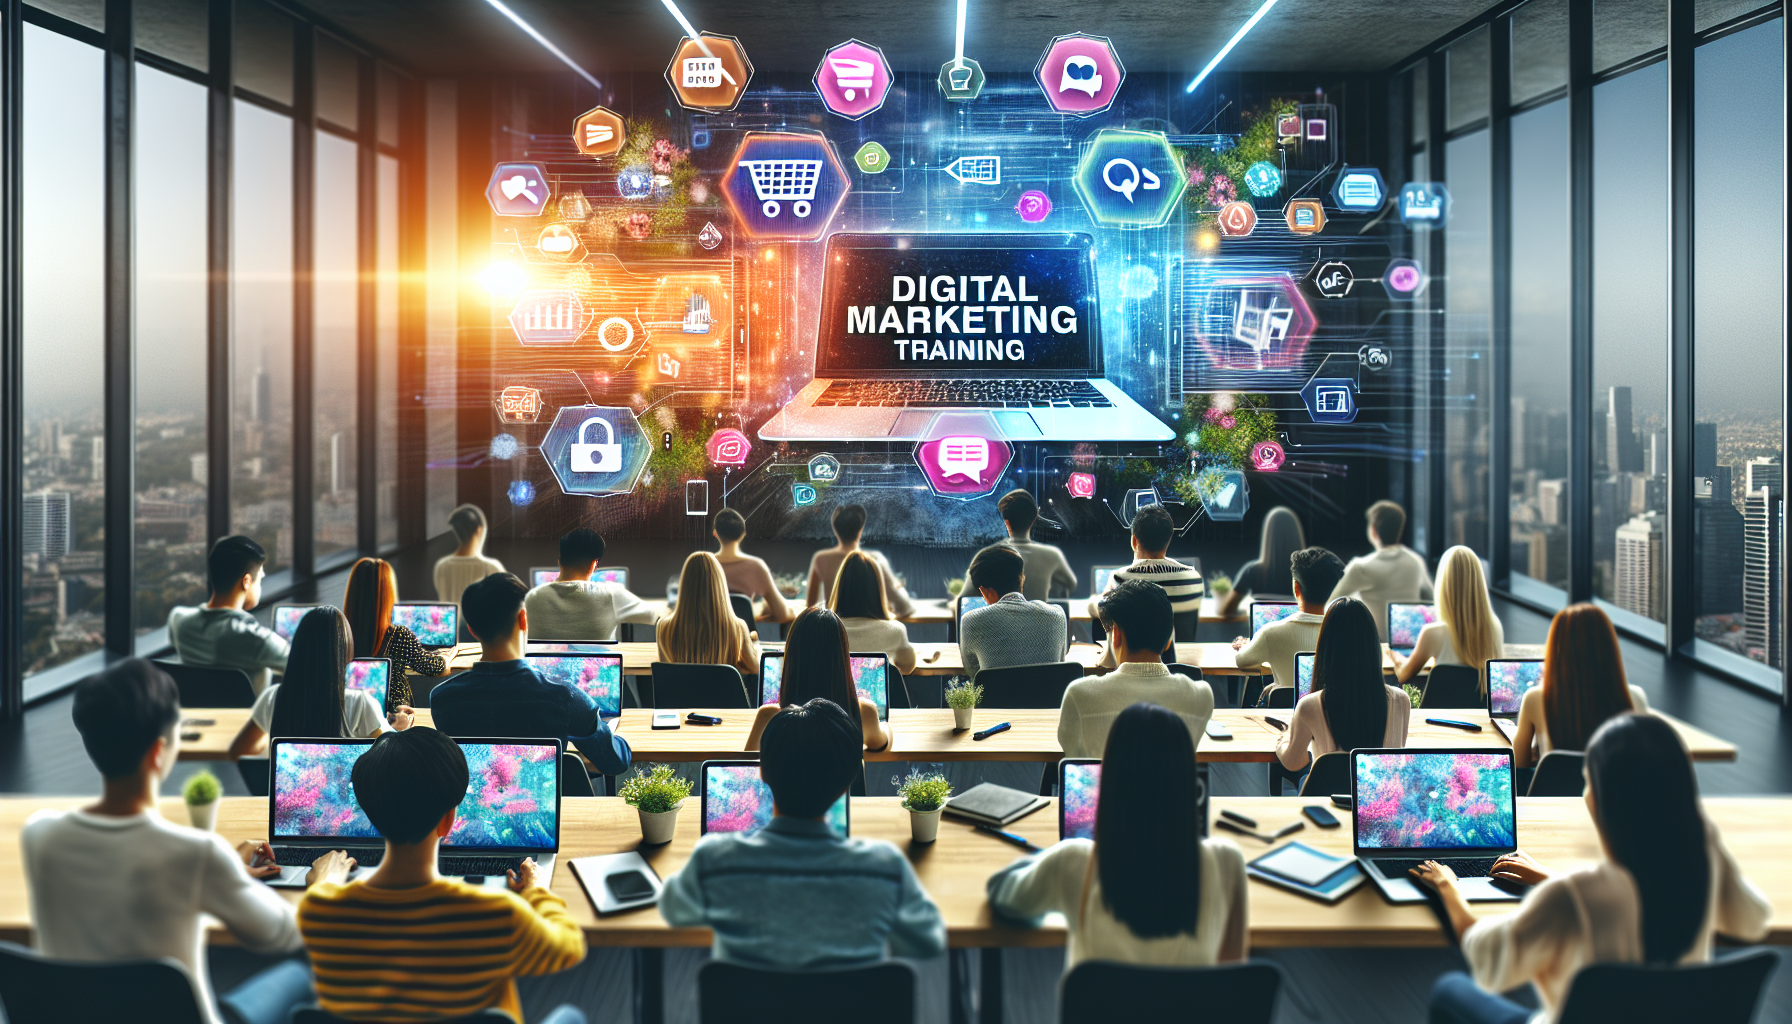 découvrez des stratégies de marketing digital pour optimiser la visibilité et la performance des sites e-commerce avec notre formation en marketing digital.